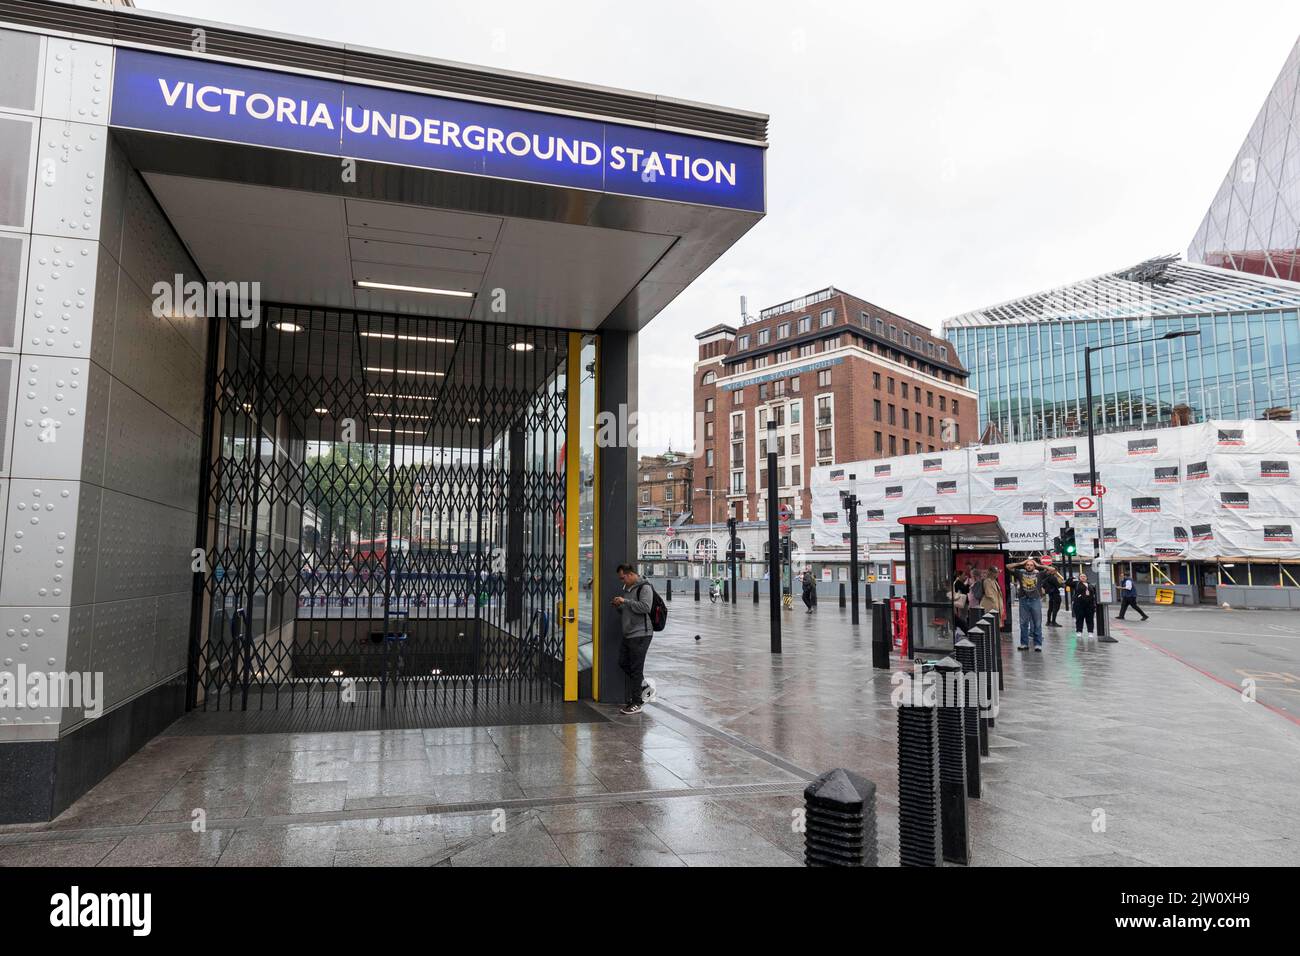 Lo sciopero della metropolitana si svolge oggi a Londra. La stazione Victoria è vista chiusa dietro le persiane questa mattina. I pendolari optano per mezzi di viaggio alternativi Foto Stock